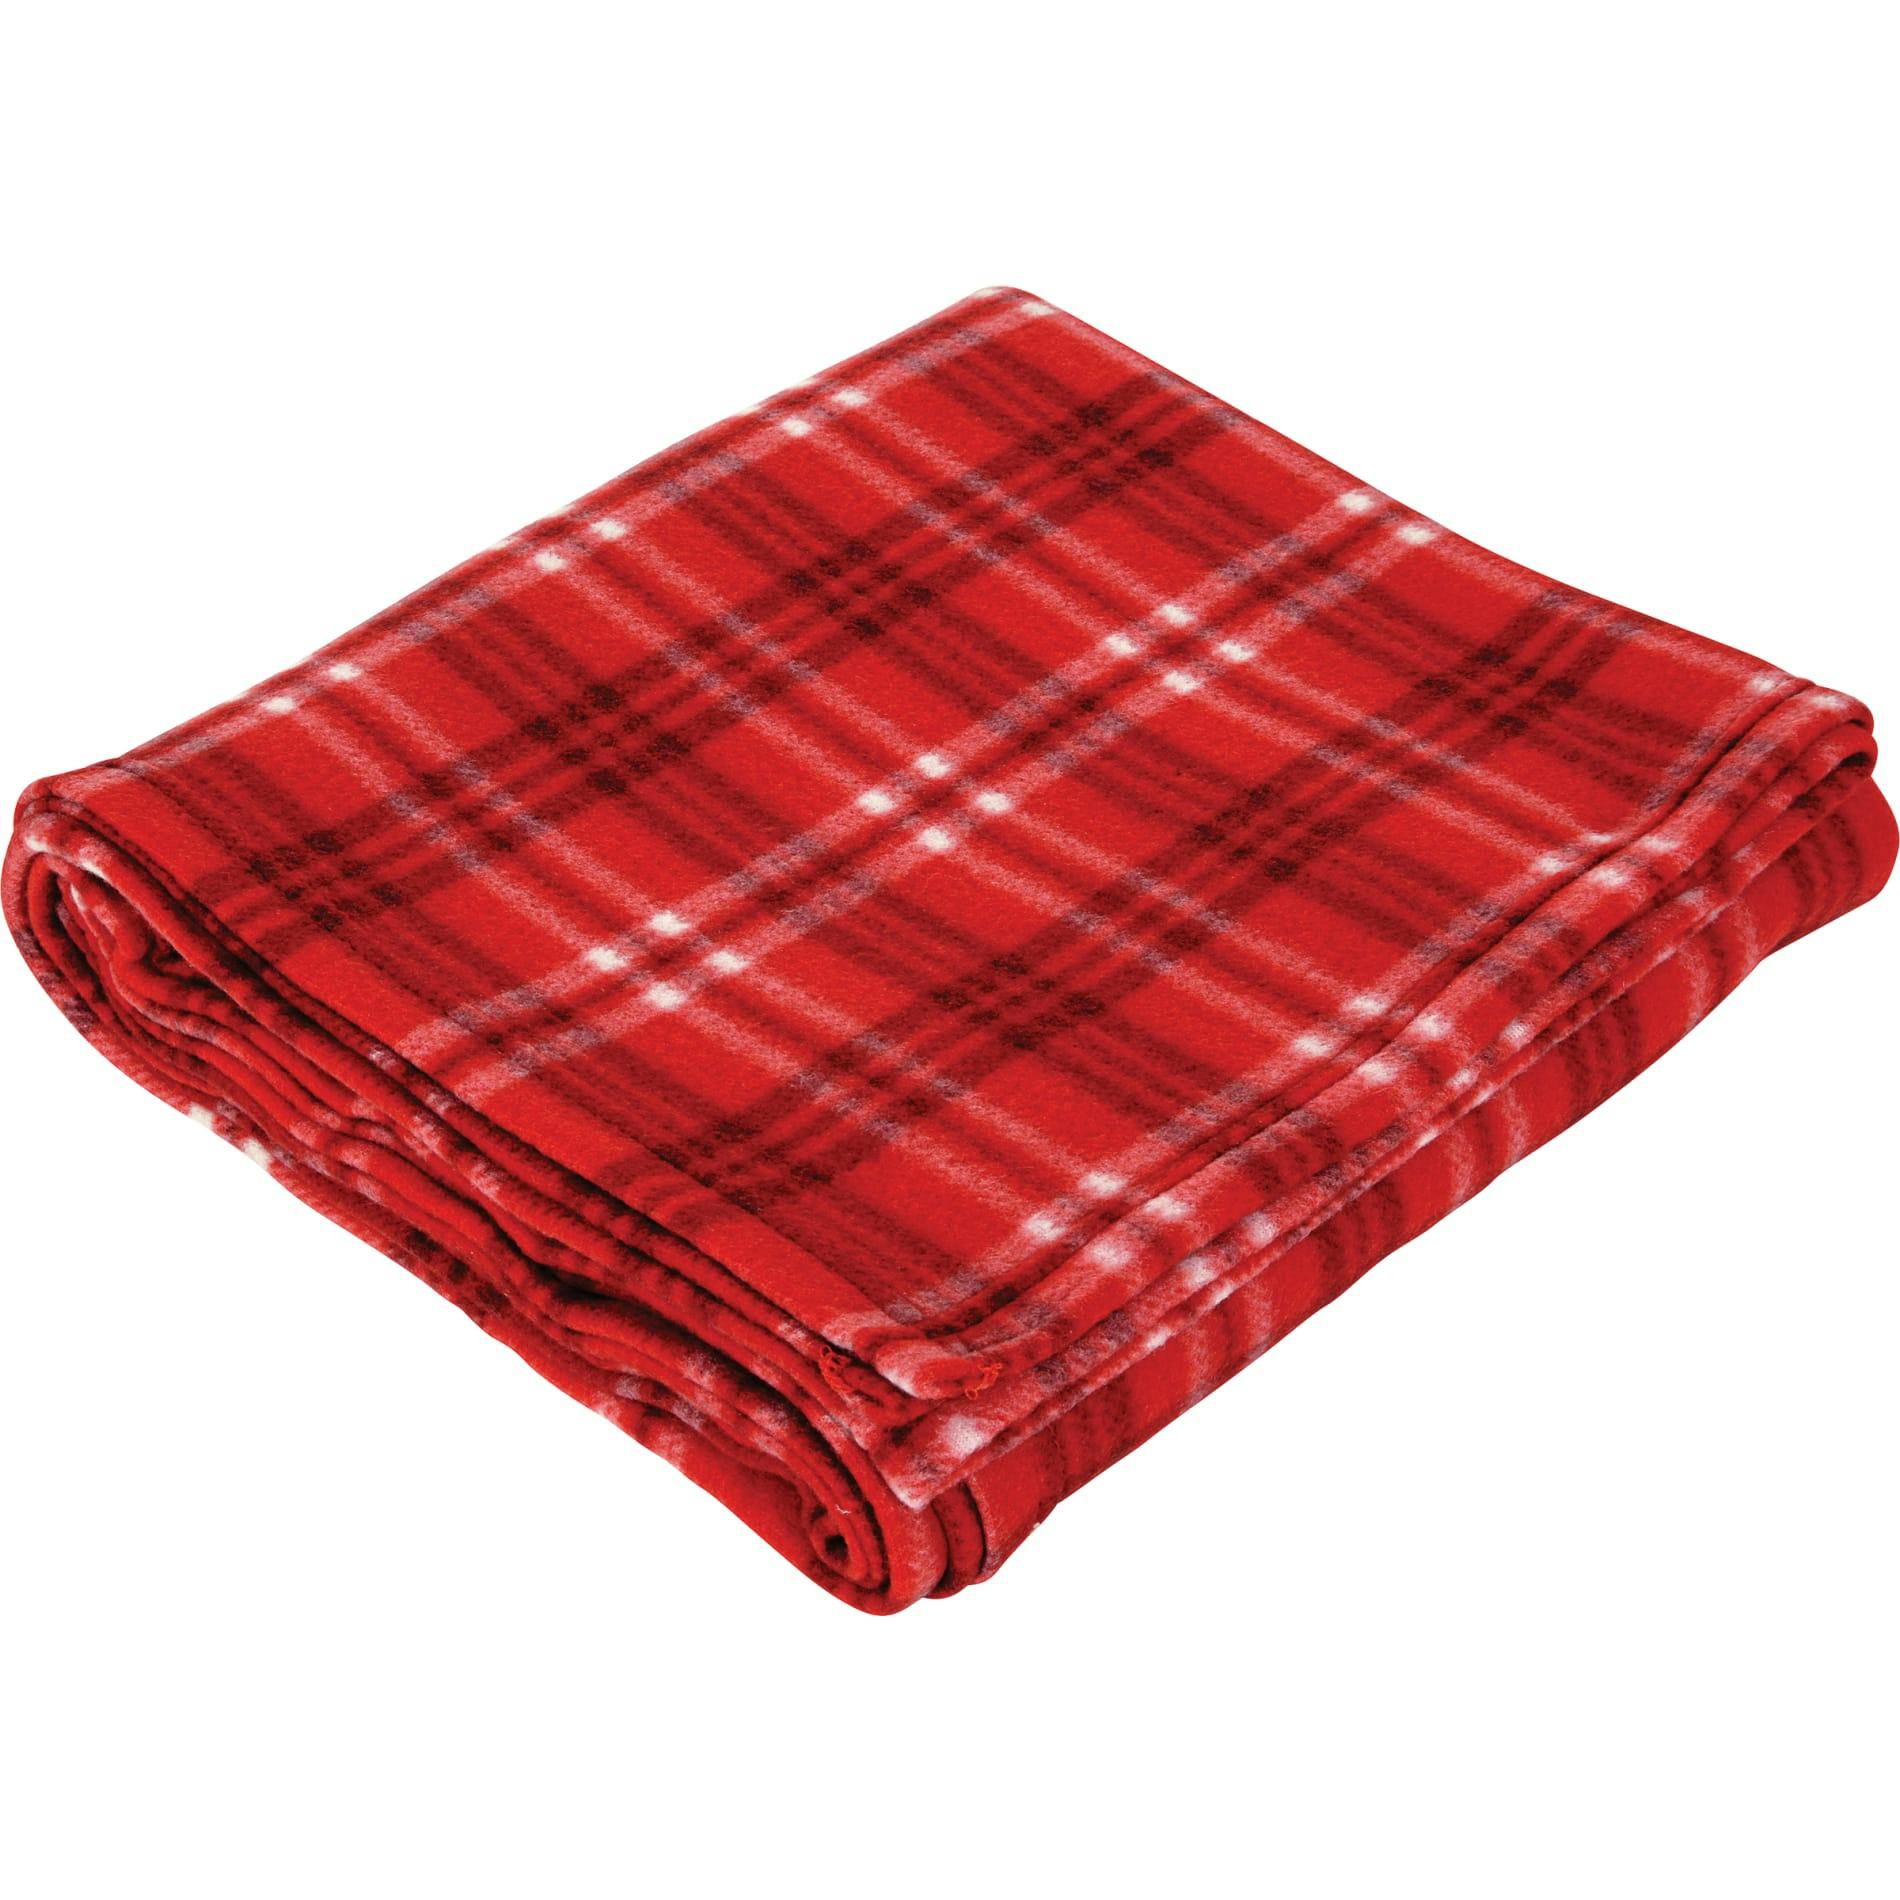 Plaid Fleece Blanket - additional Image 3